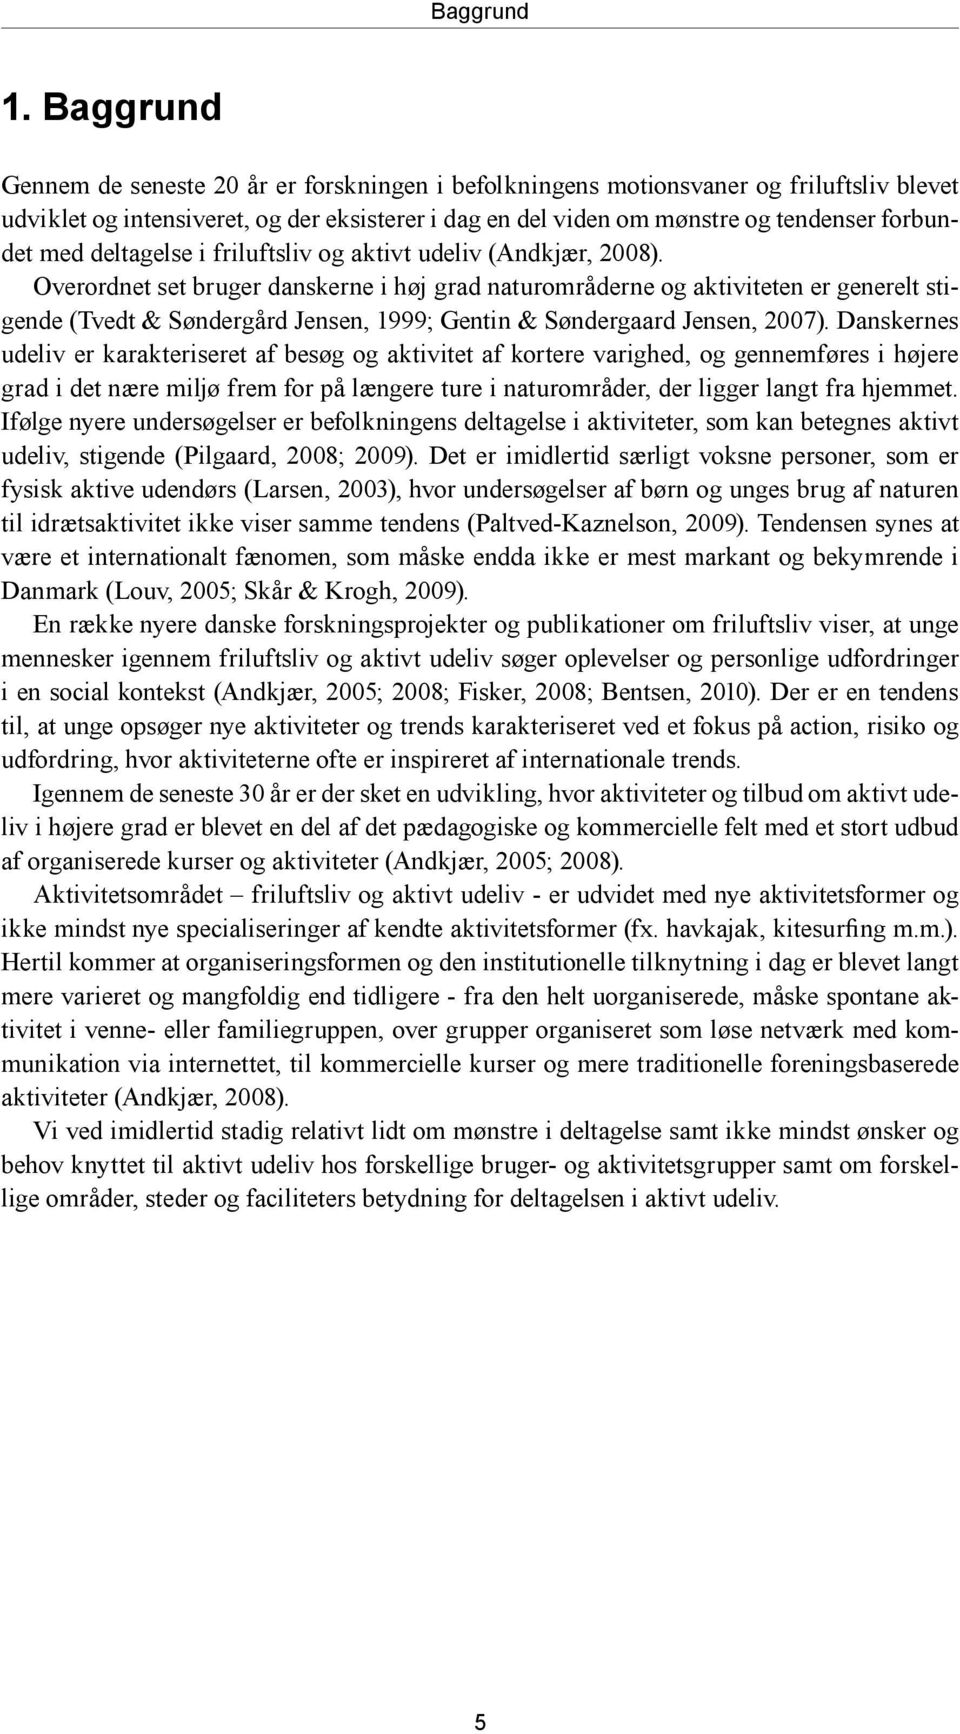 deltagelse i friluftsliv og aktivt udeliv (Andkjær, 2008).